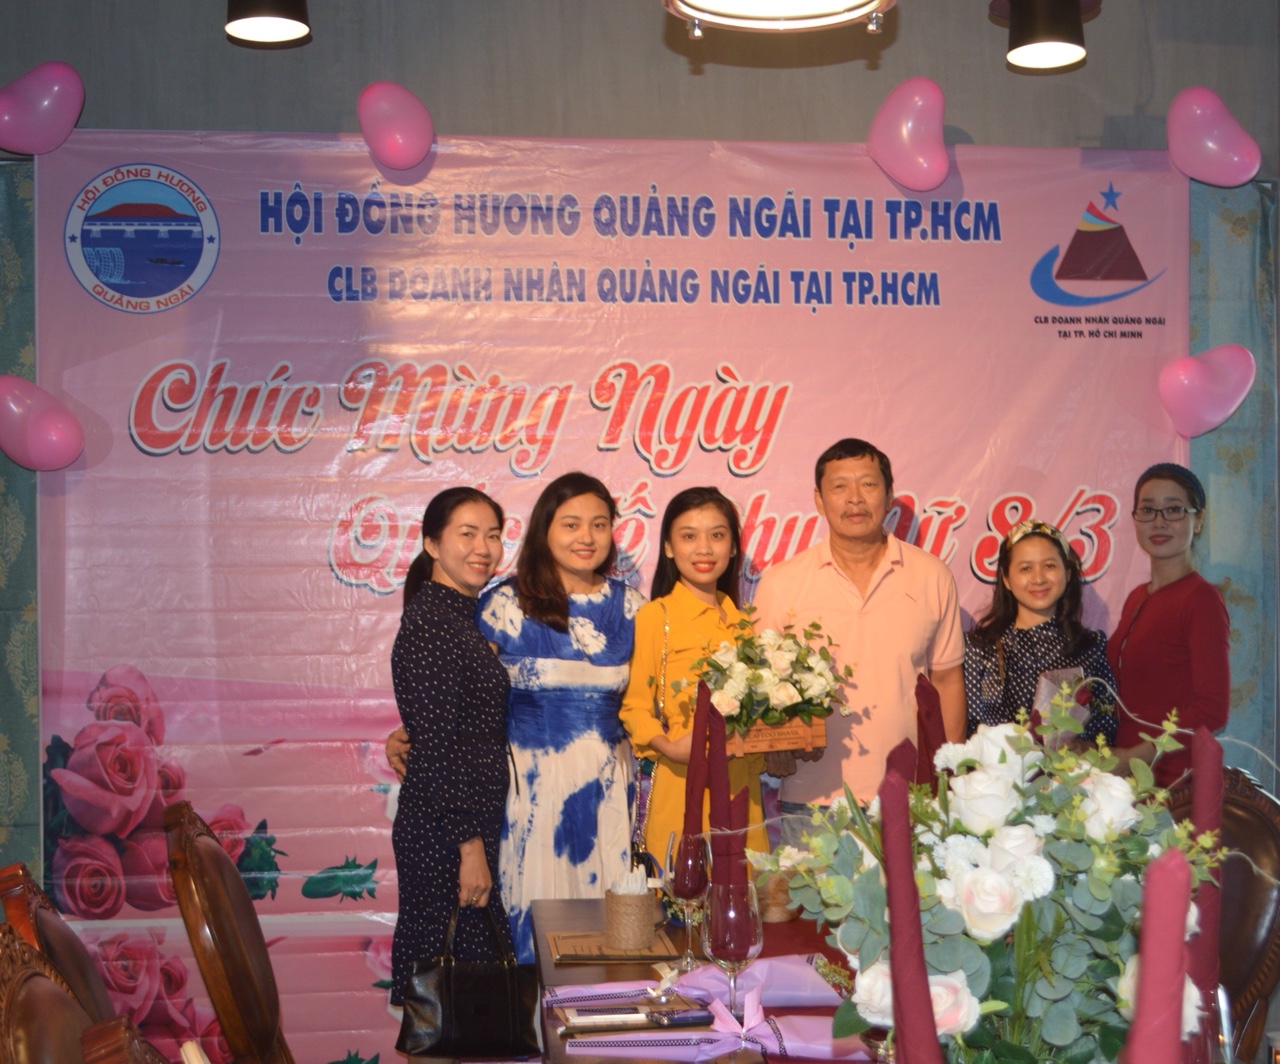 Hình ảnhÔng Trần Đình Vĩnh Chủ tịch tặng hoa và chụp hình kỉ niệm